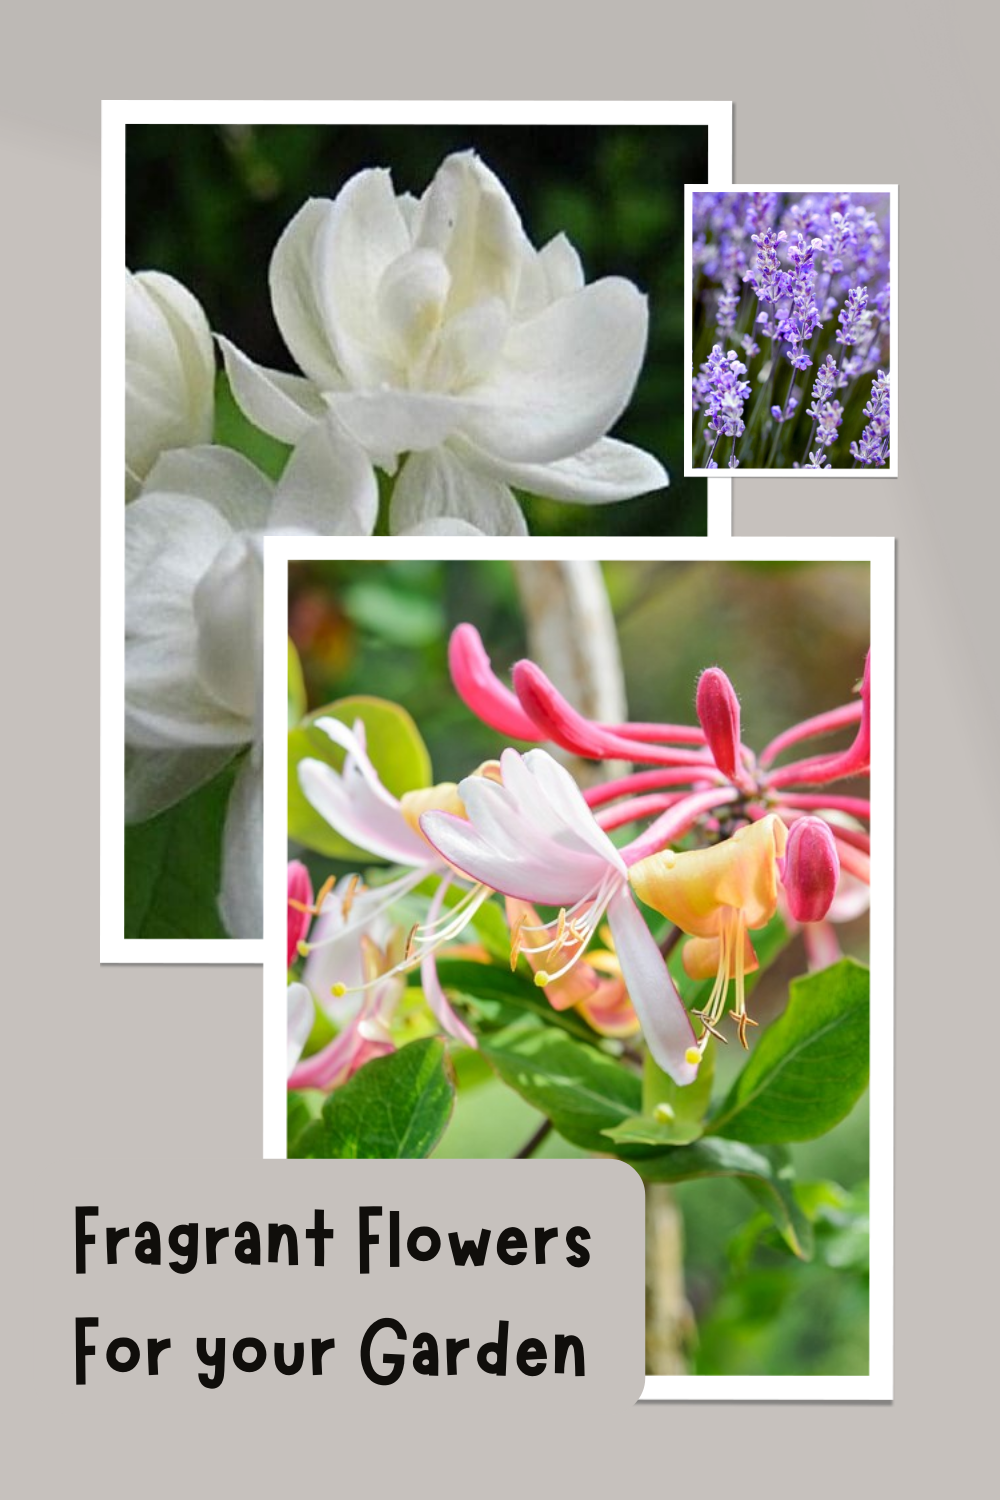 Fragrant Flowers For your Garden